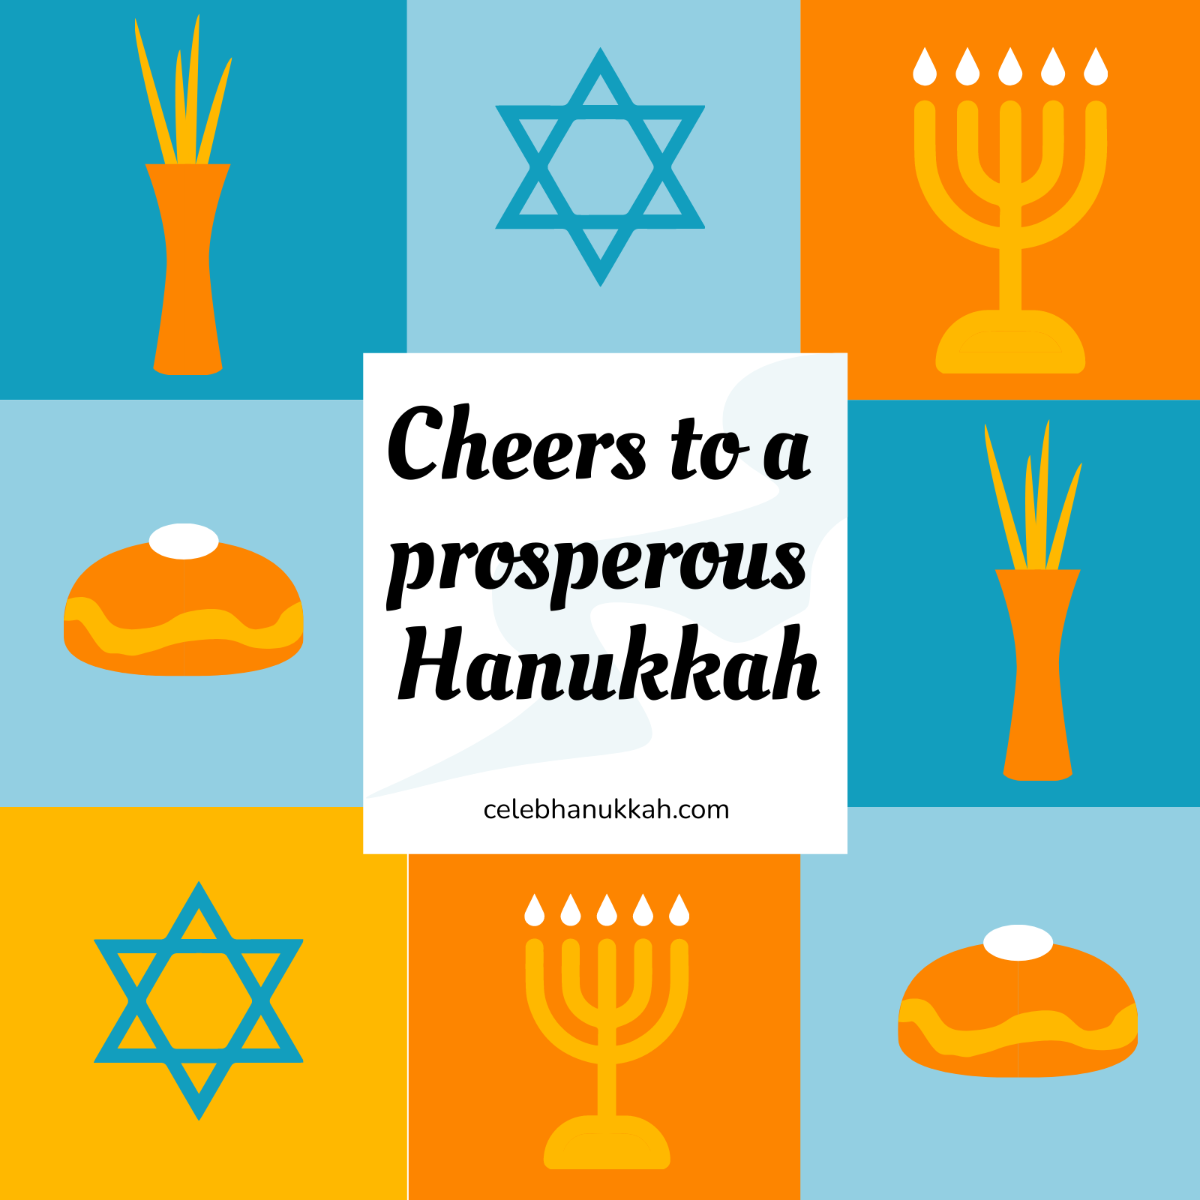 Free Hanukkah Posters Vector Template